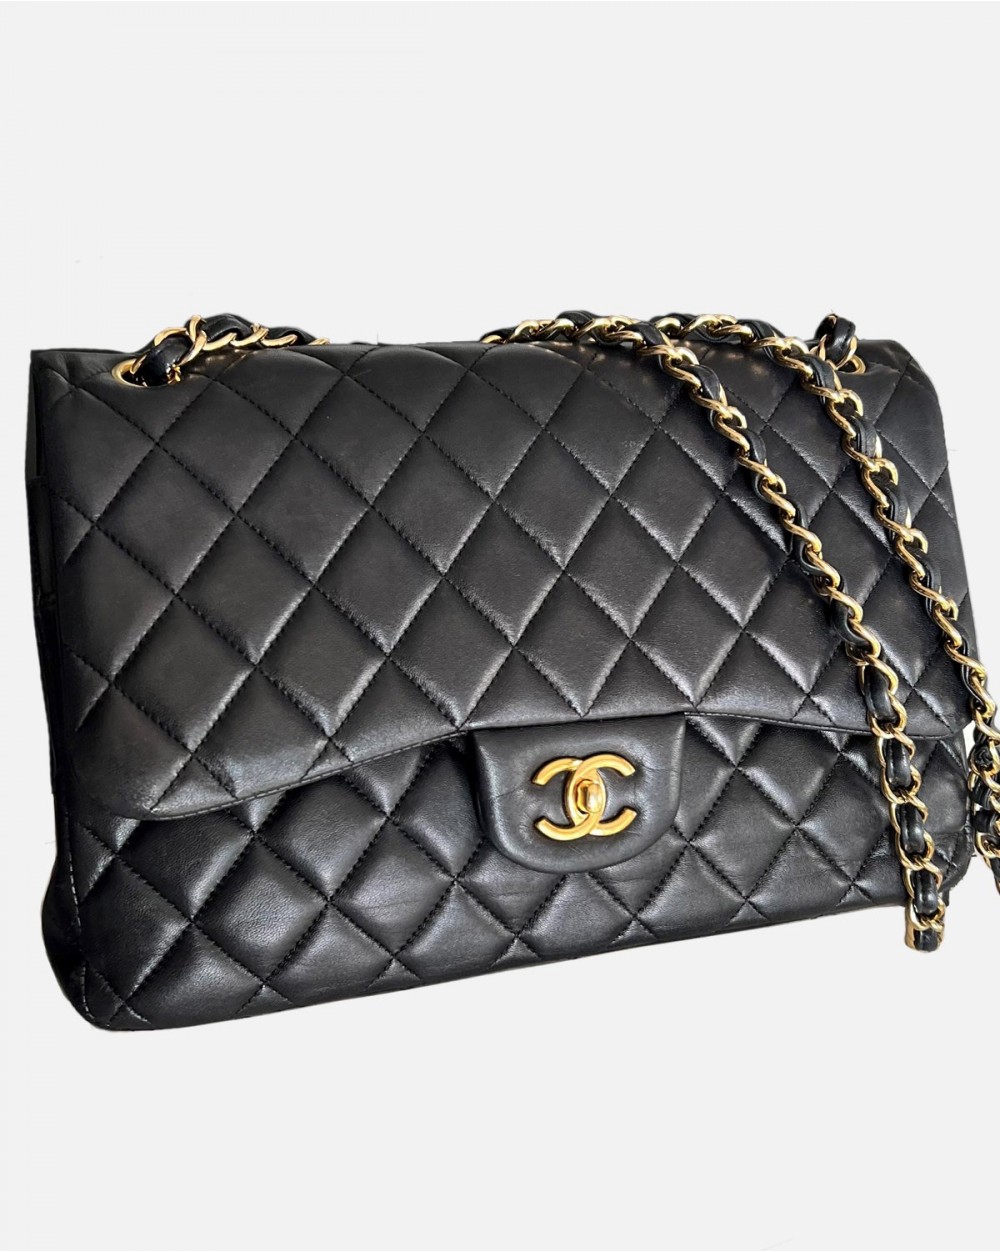 Chanel Jumbo bag